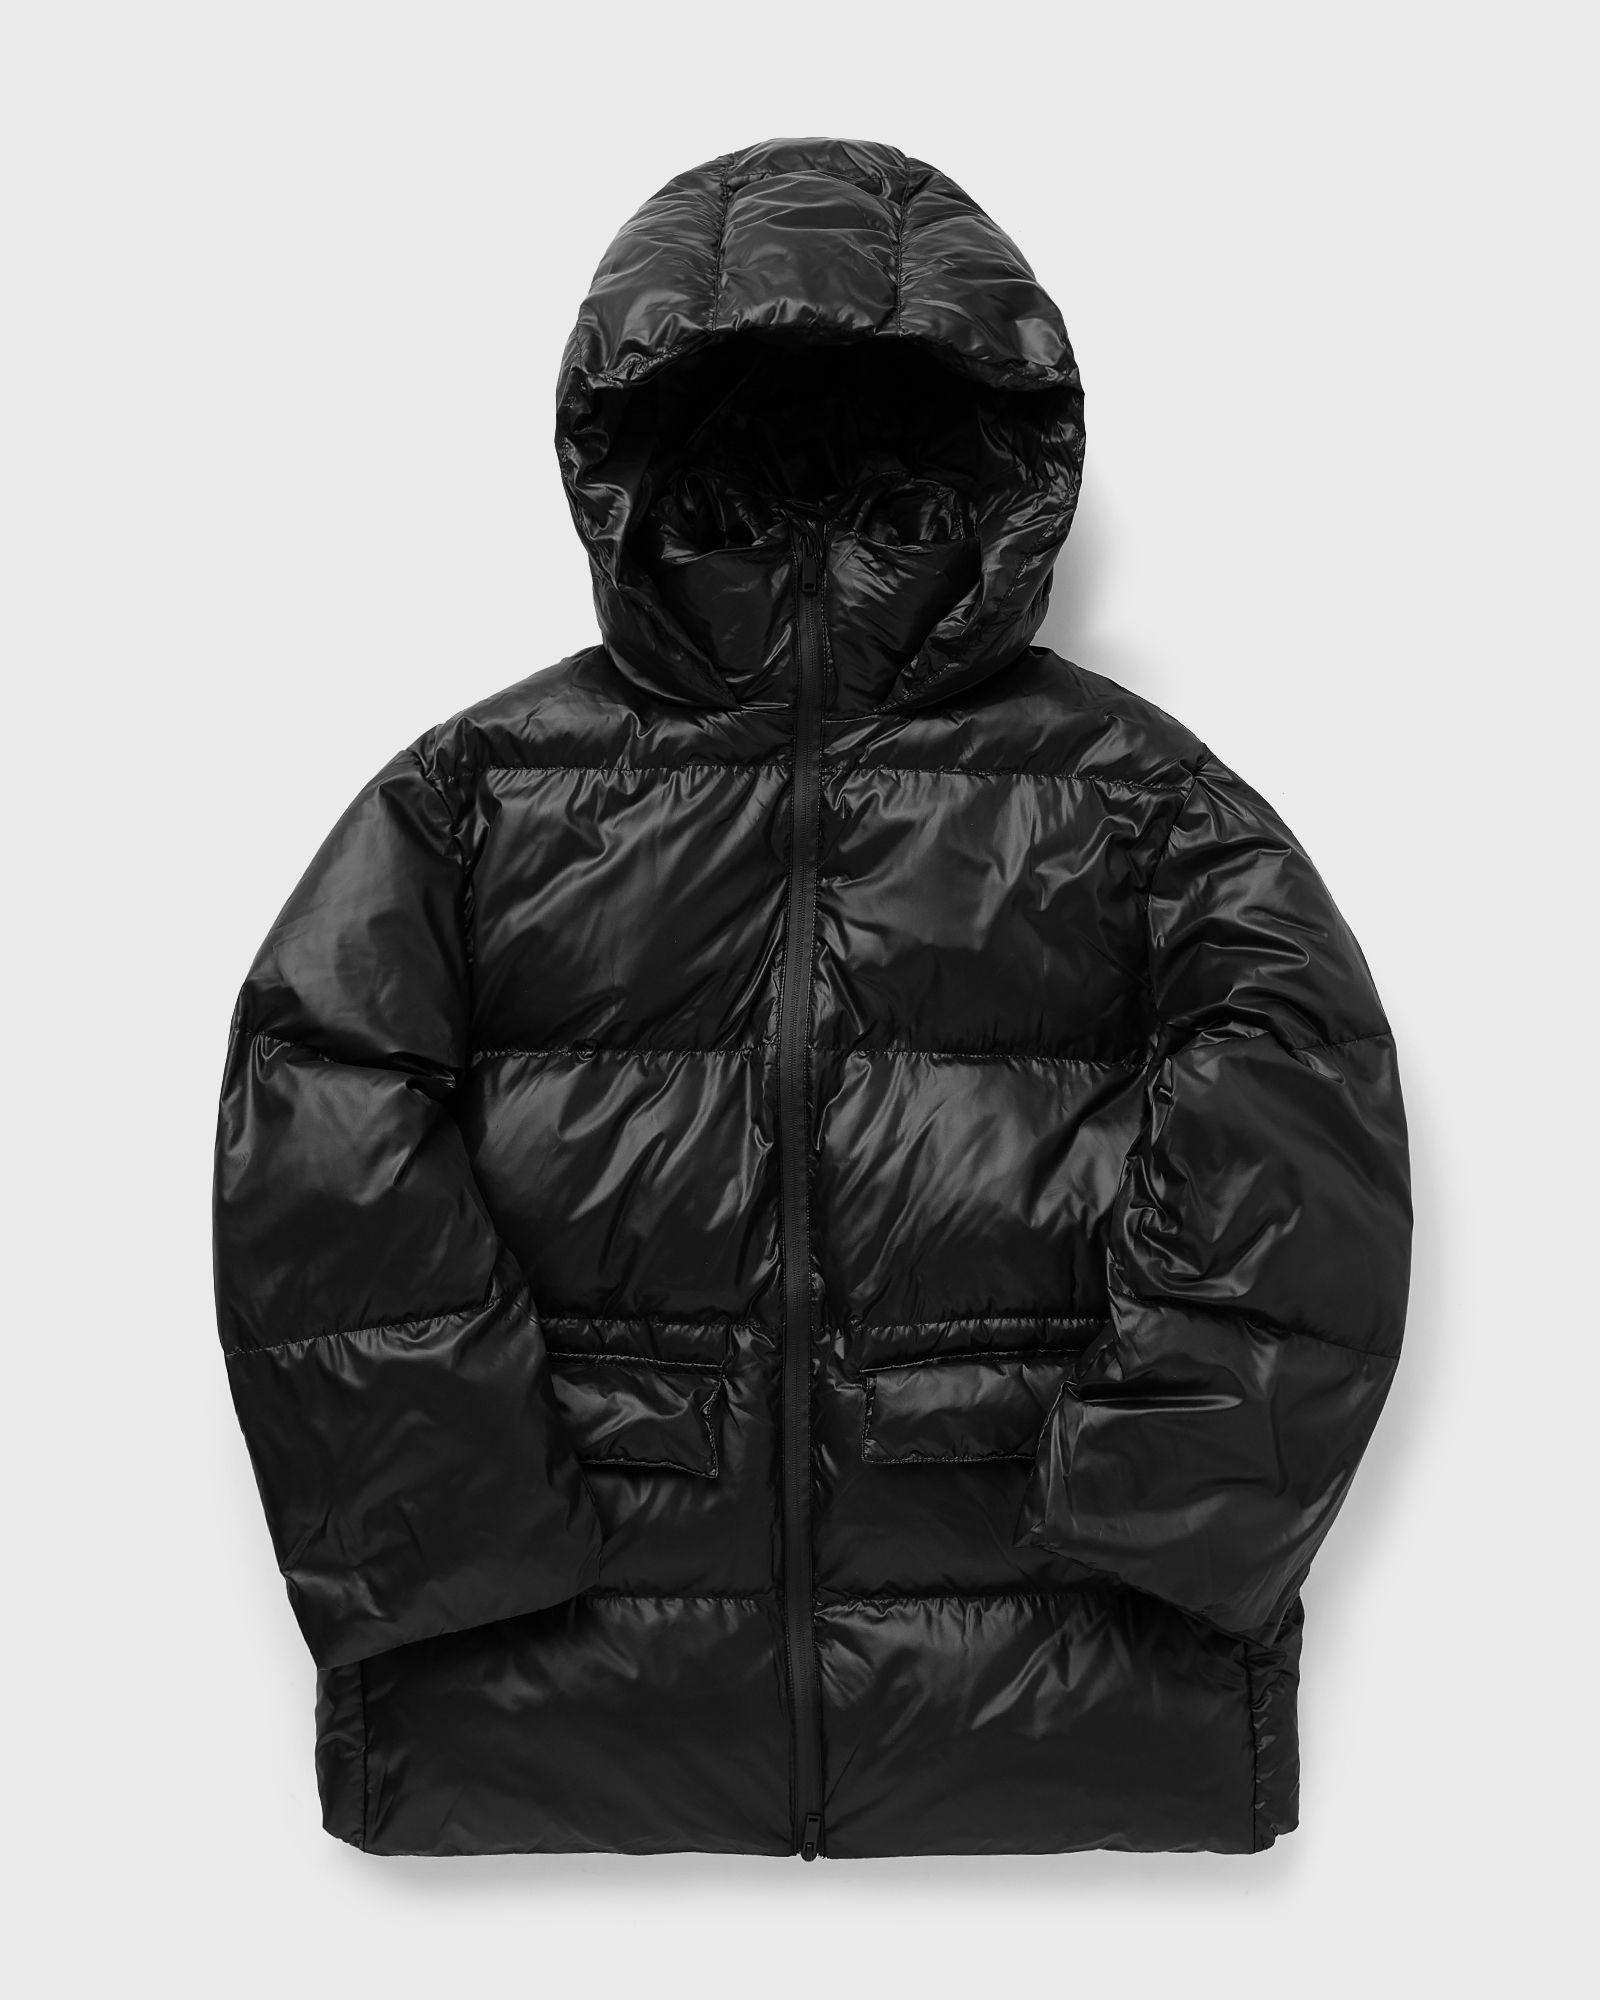 Envii - enraccoon jacket 6766 women down & puffer jackets black in größe:l